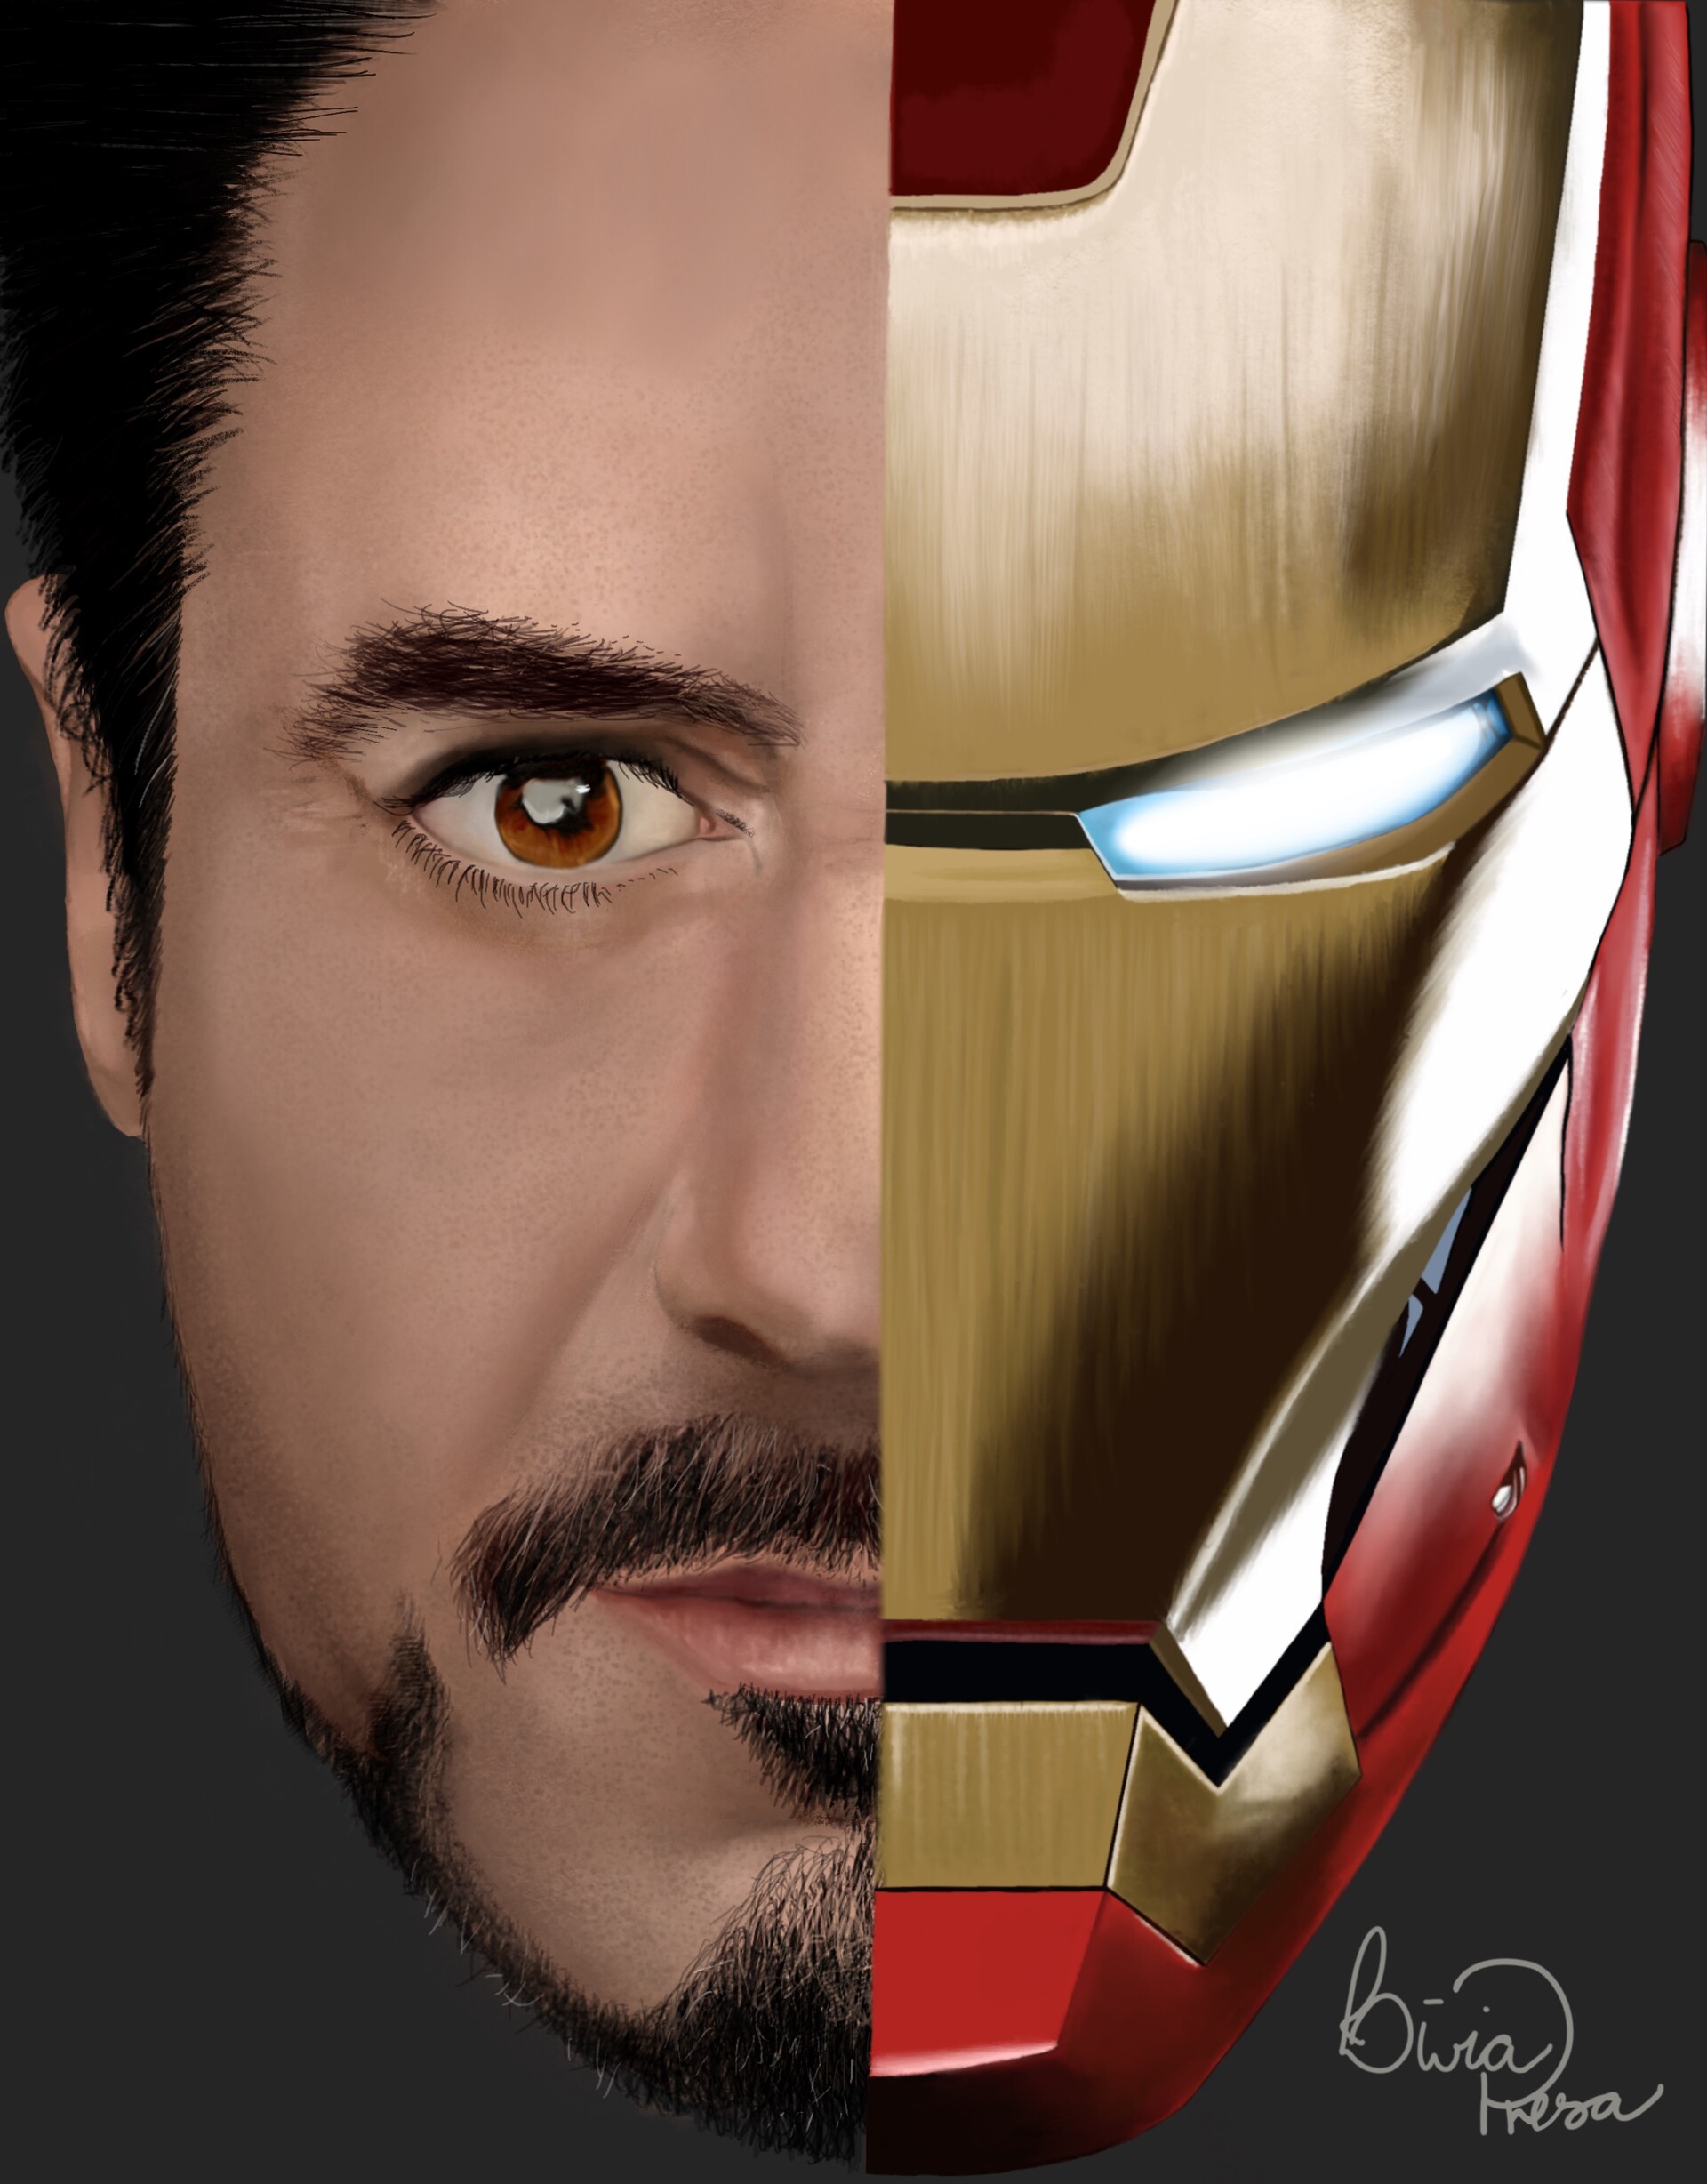 Stark Industries | INDOOR | Sticker | Superhero | Iron Man | Tony Stark